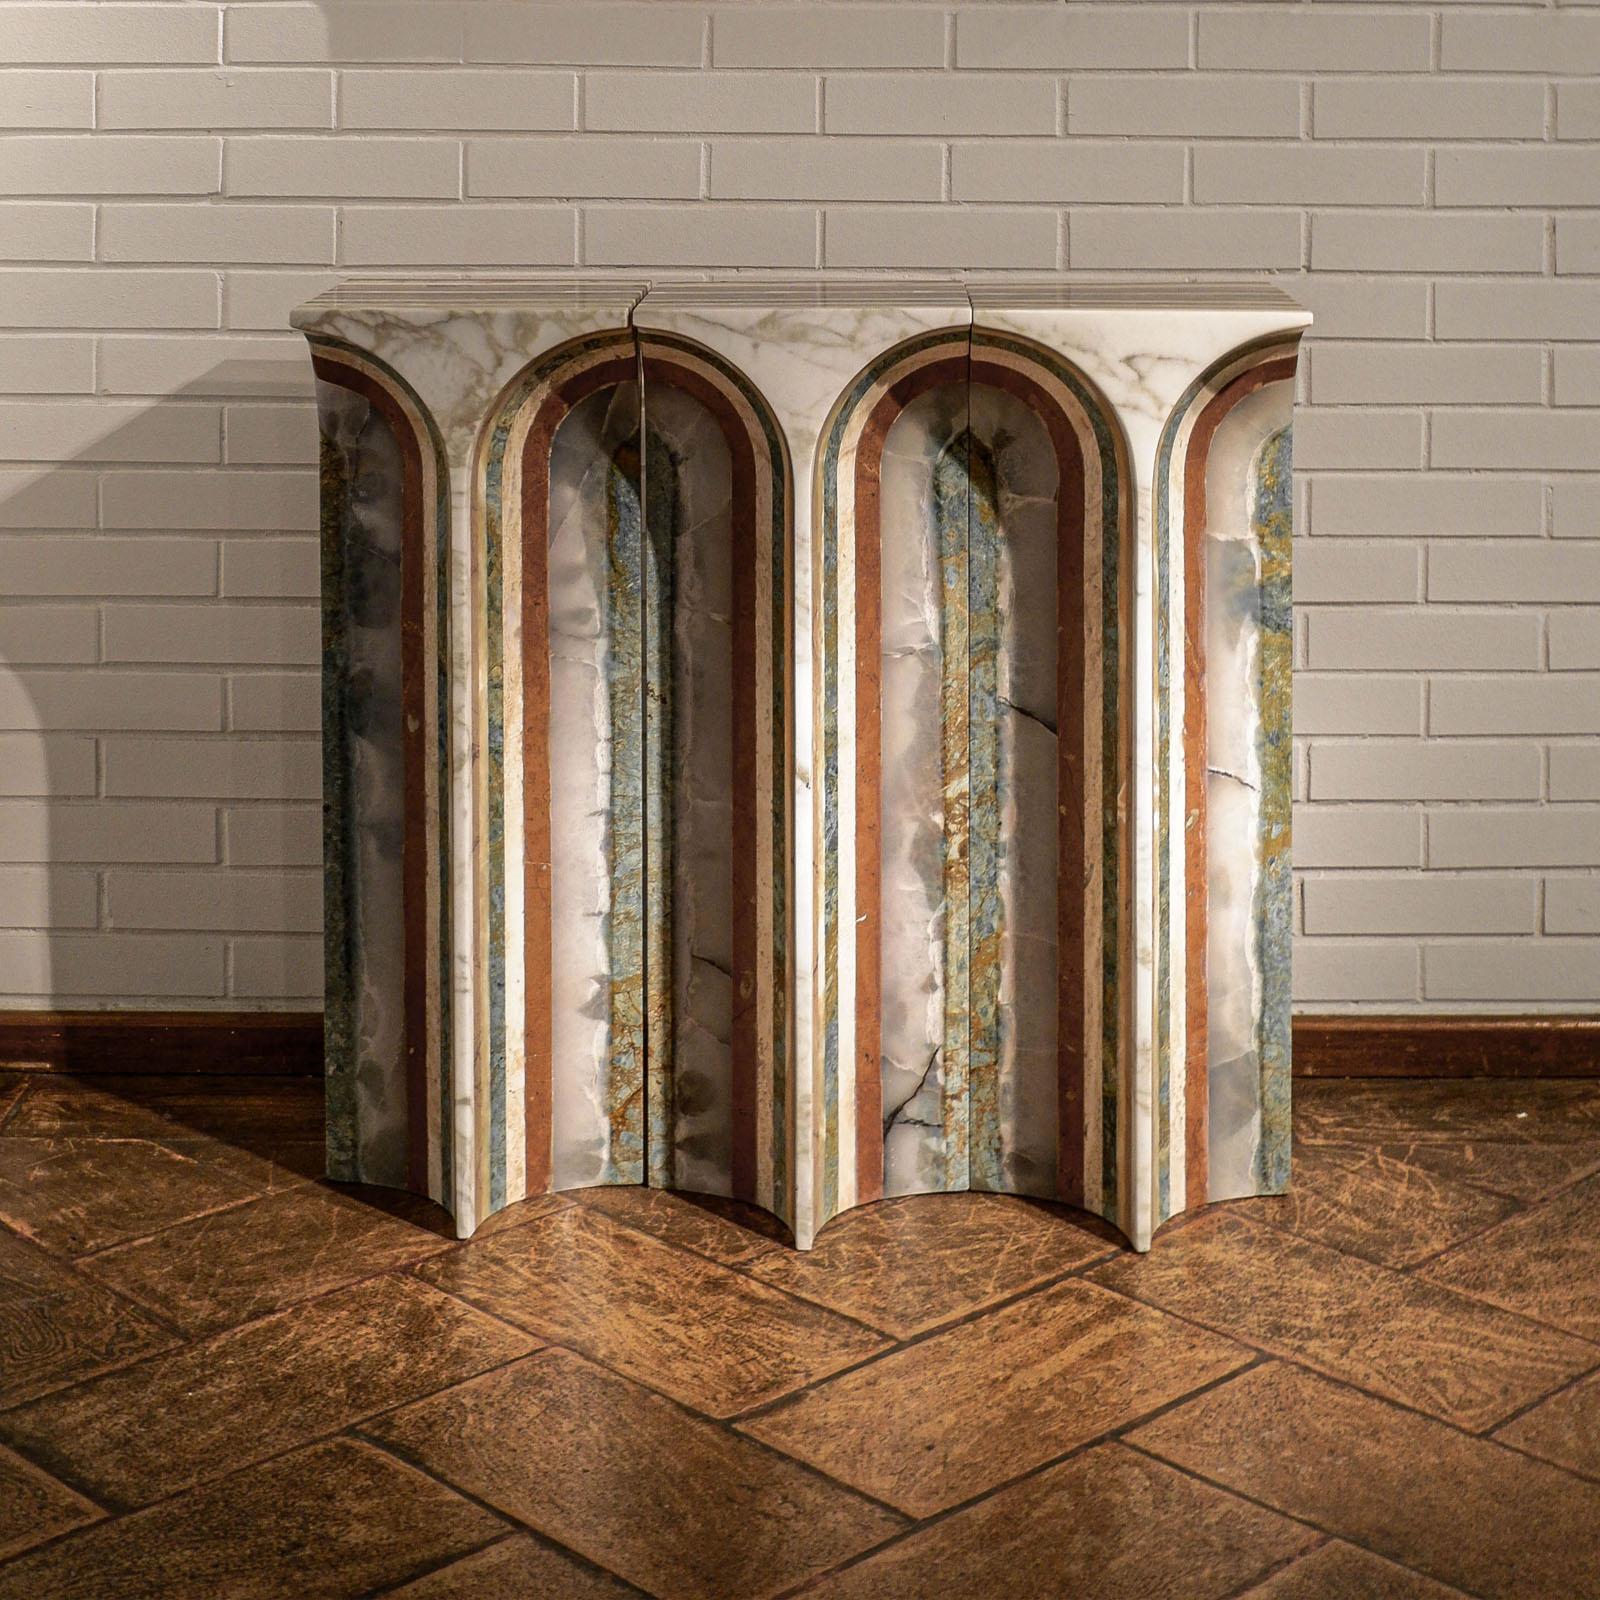 La collection exclusive de marbre SEVEN est le résultat d'une Collaboration
entre le studio de design de meubles BUDDE, basé à Cologne, et l'entreprise
SolidNature, l'un des principaux conservateurs et fournisseurs mondiaux de produits naturels de